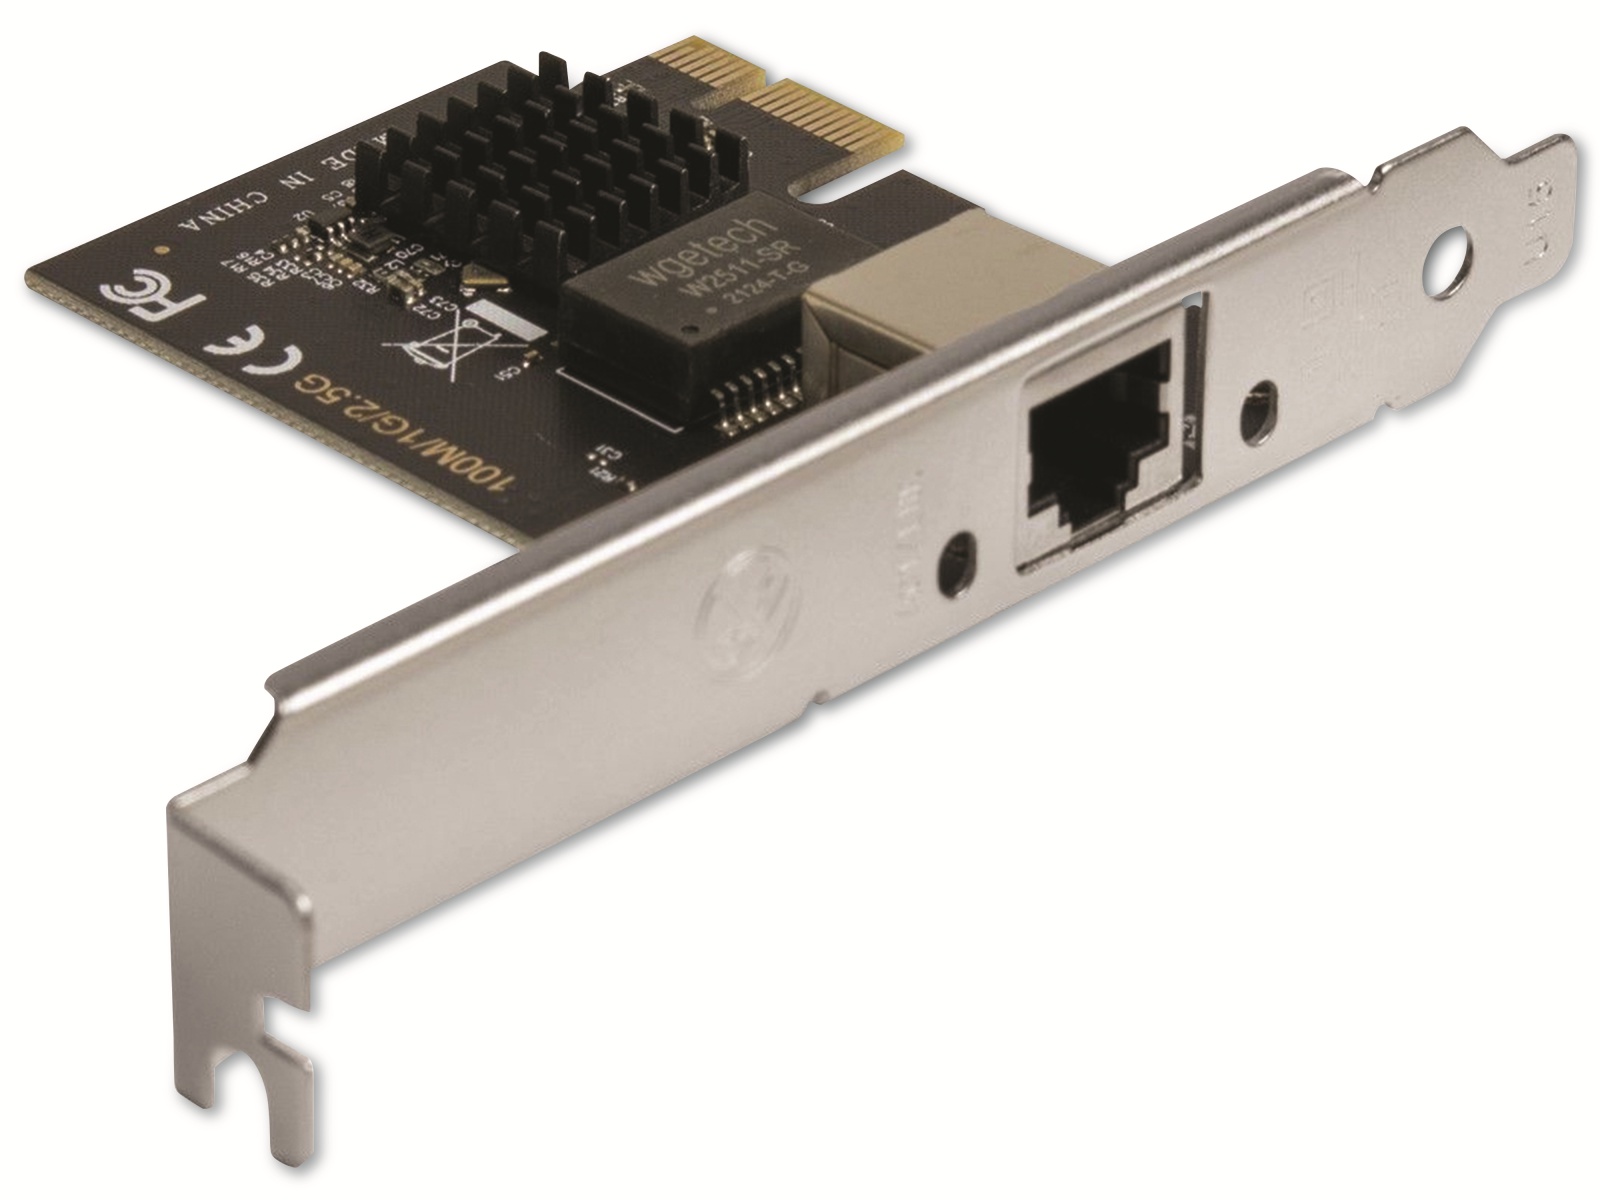 ARGUS PCI-Netzwerkkarte ST-7266, 2,5 GBit/s